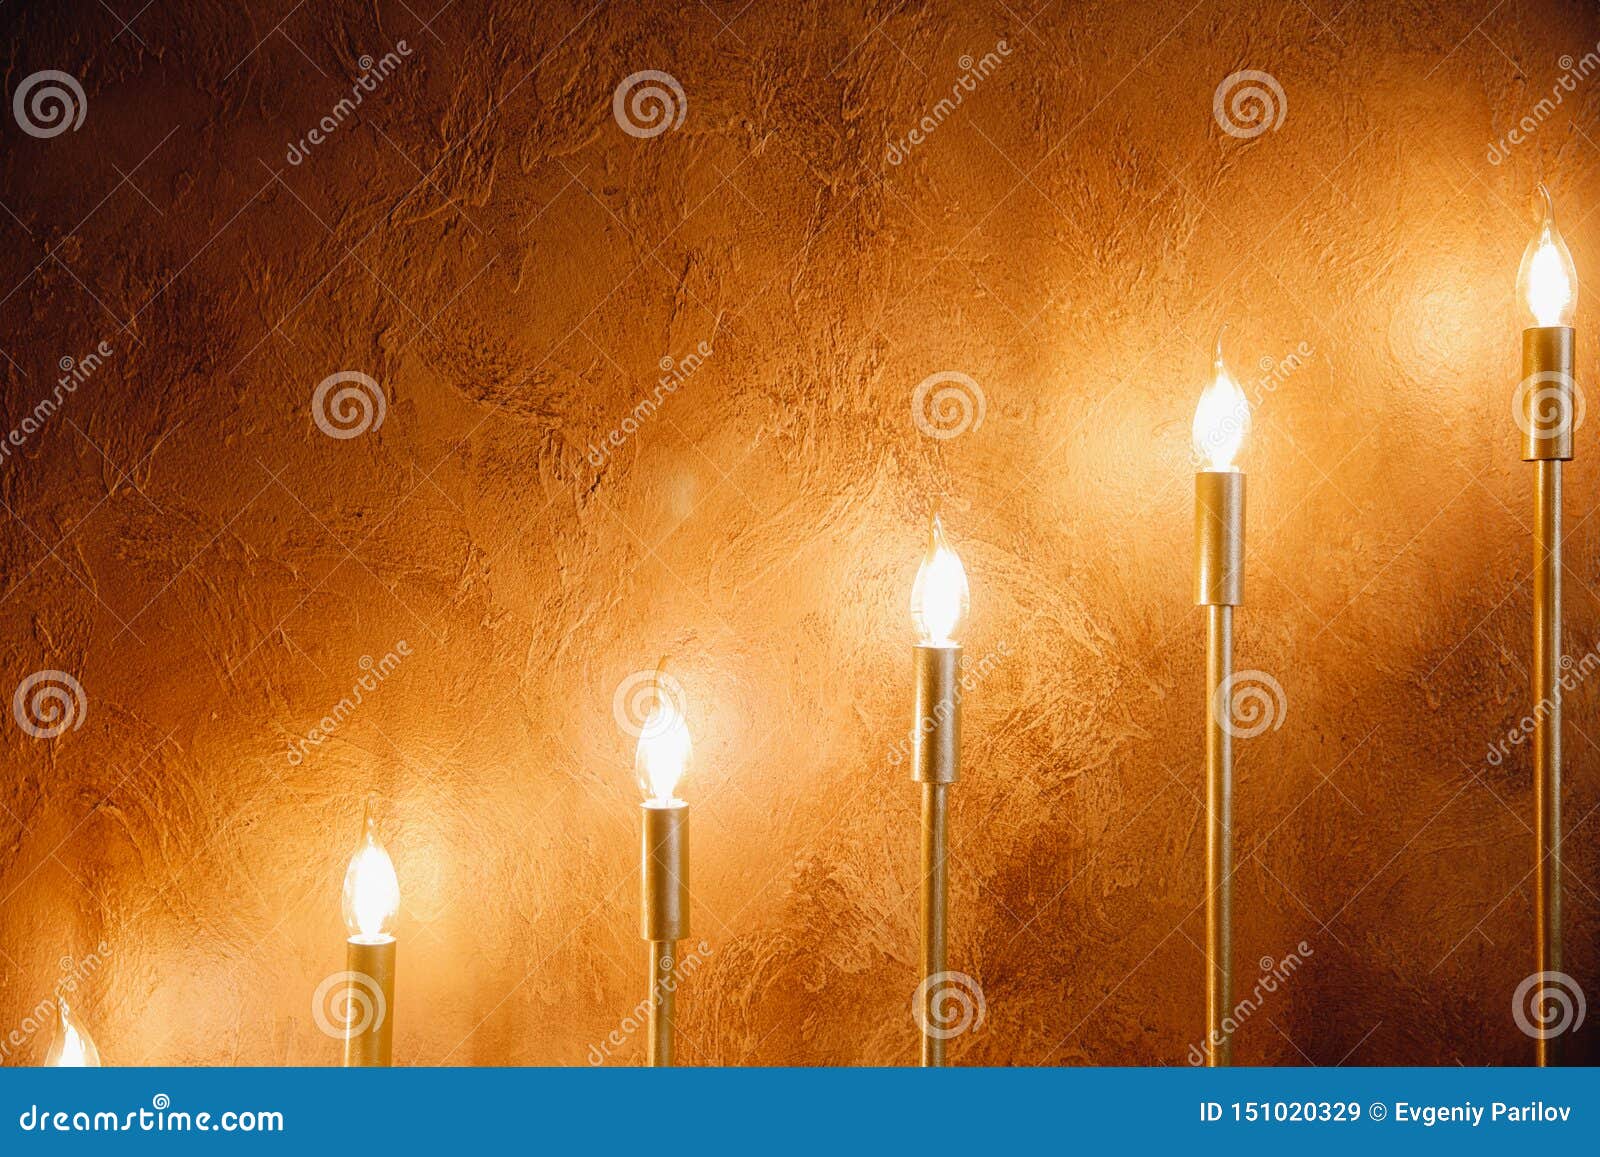 Dempsey D.w.z walgelijk Elektrische Kaarsen in Kandelaars Tegen Achtergrond Van Gele Concrete Muur  Stock Afbeelding - Image of kaarsen, kaars: 151020329